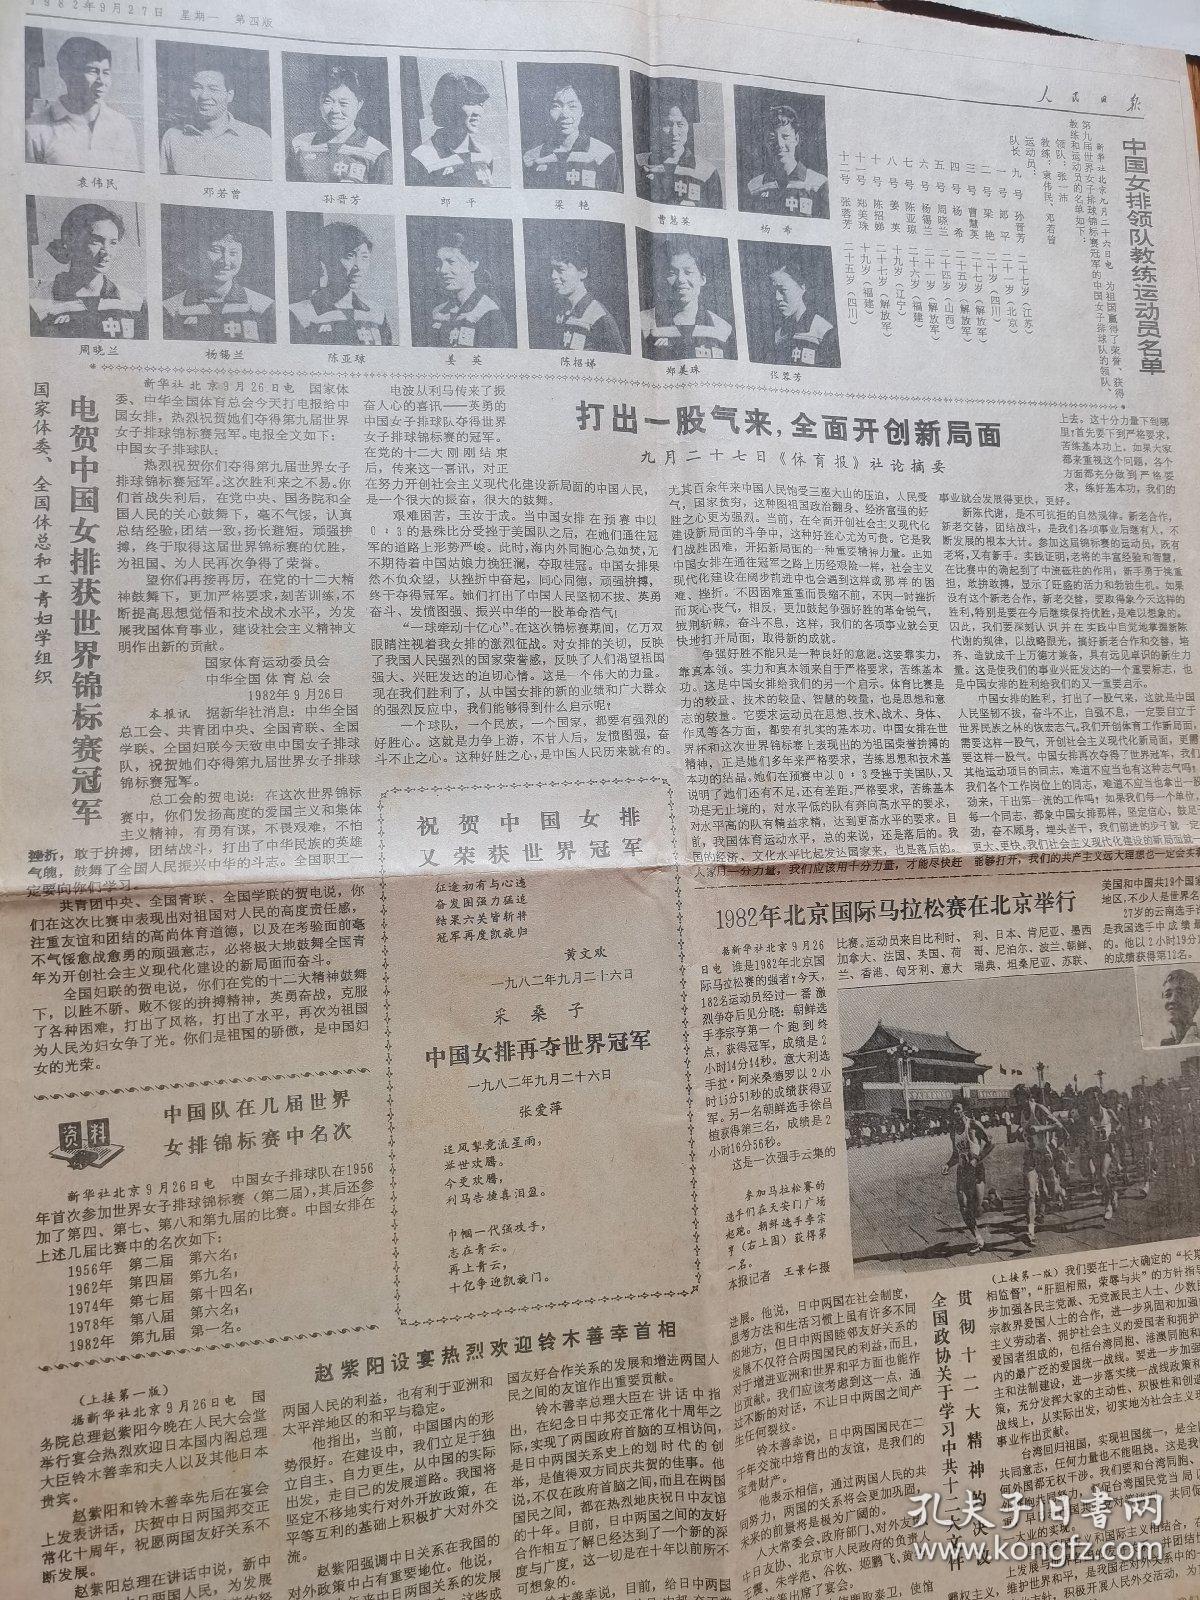 人民日报1982年9月27日  中国女排荣获世界锦标赛冠军，四版。 主教练：袁伟民
队员：孙晋芳、张蓉芳、周晓兰、郎平、陈亚琼、陈招娣、曹慧英、杨希、姜英、梁艳、郑美珠和杨锡兰。
1982年北京国际马拉松赛在北京举行。182名运动员参加，最终朝鲜选手李宗亨获得冠军，成绩是2小时14分44秒。